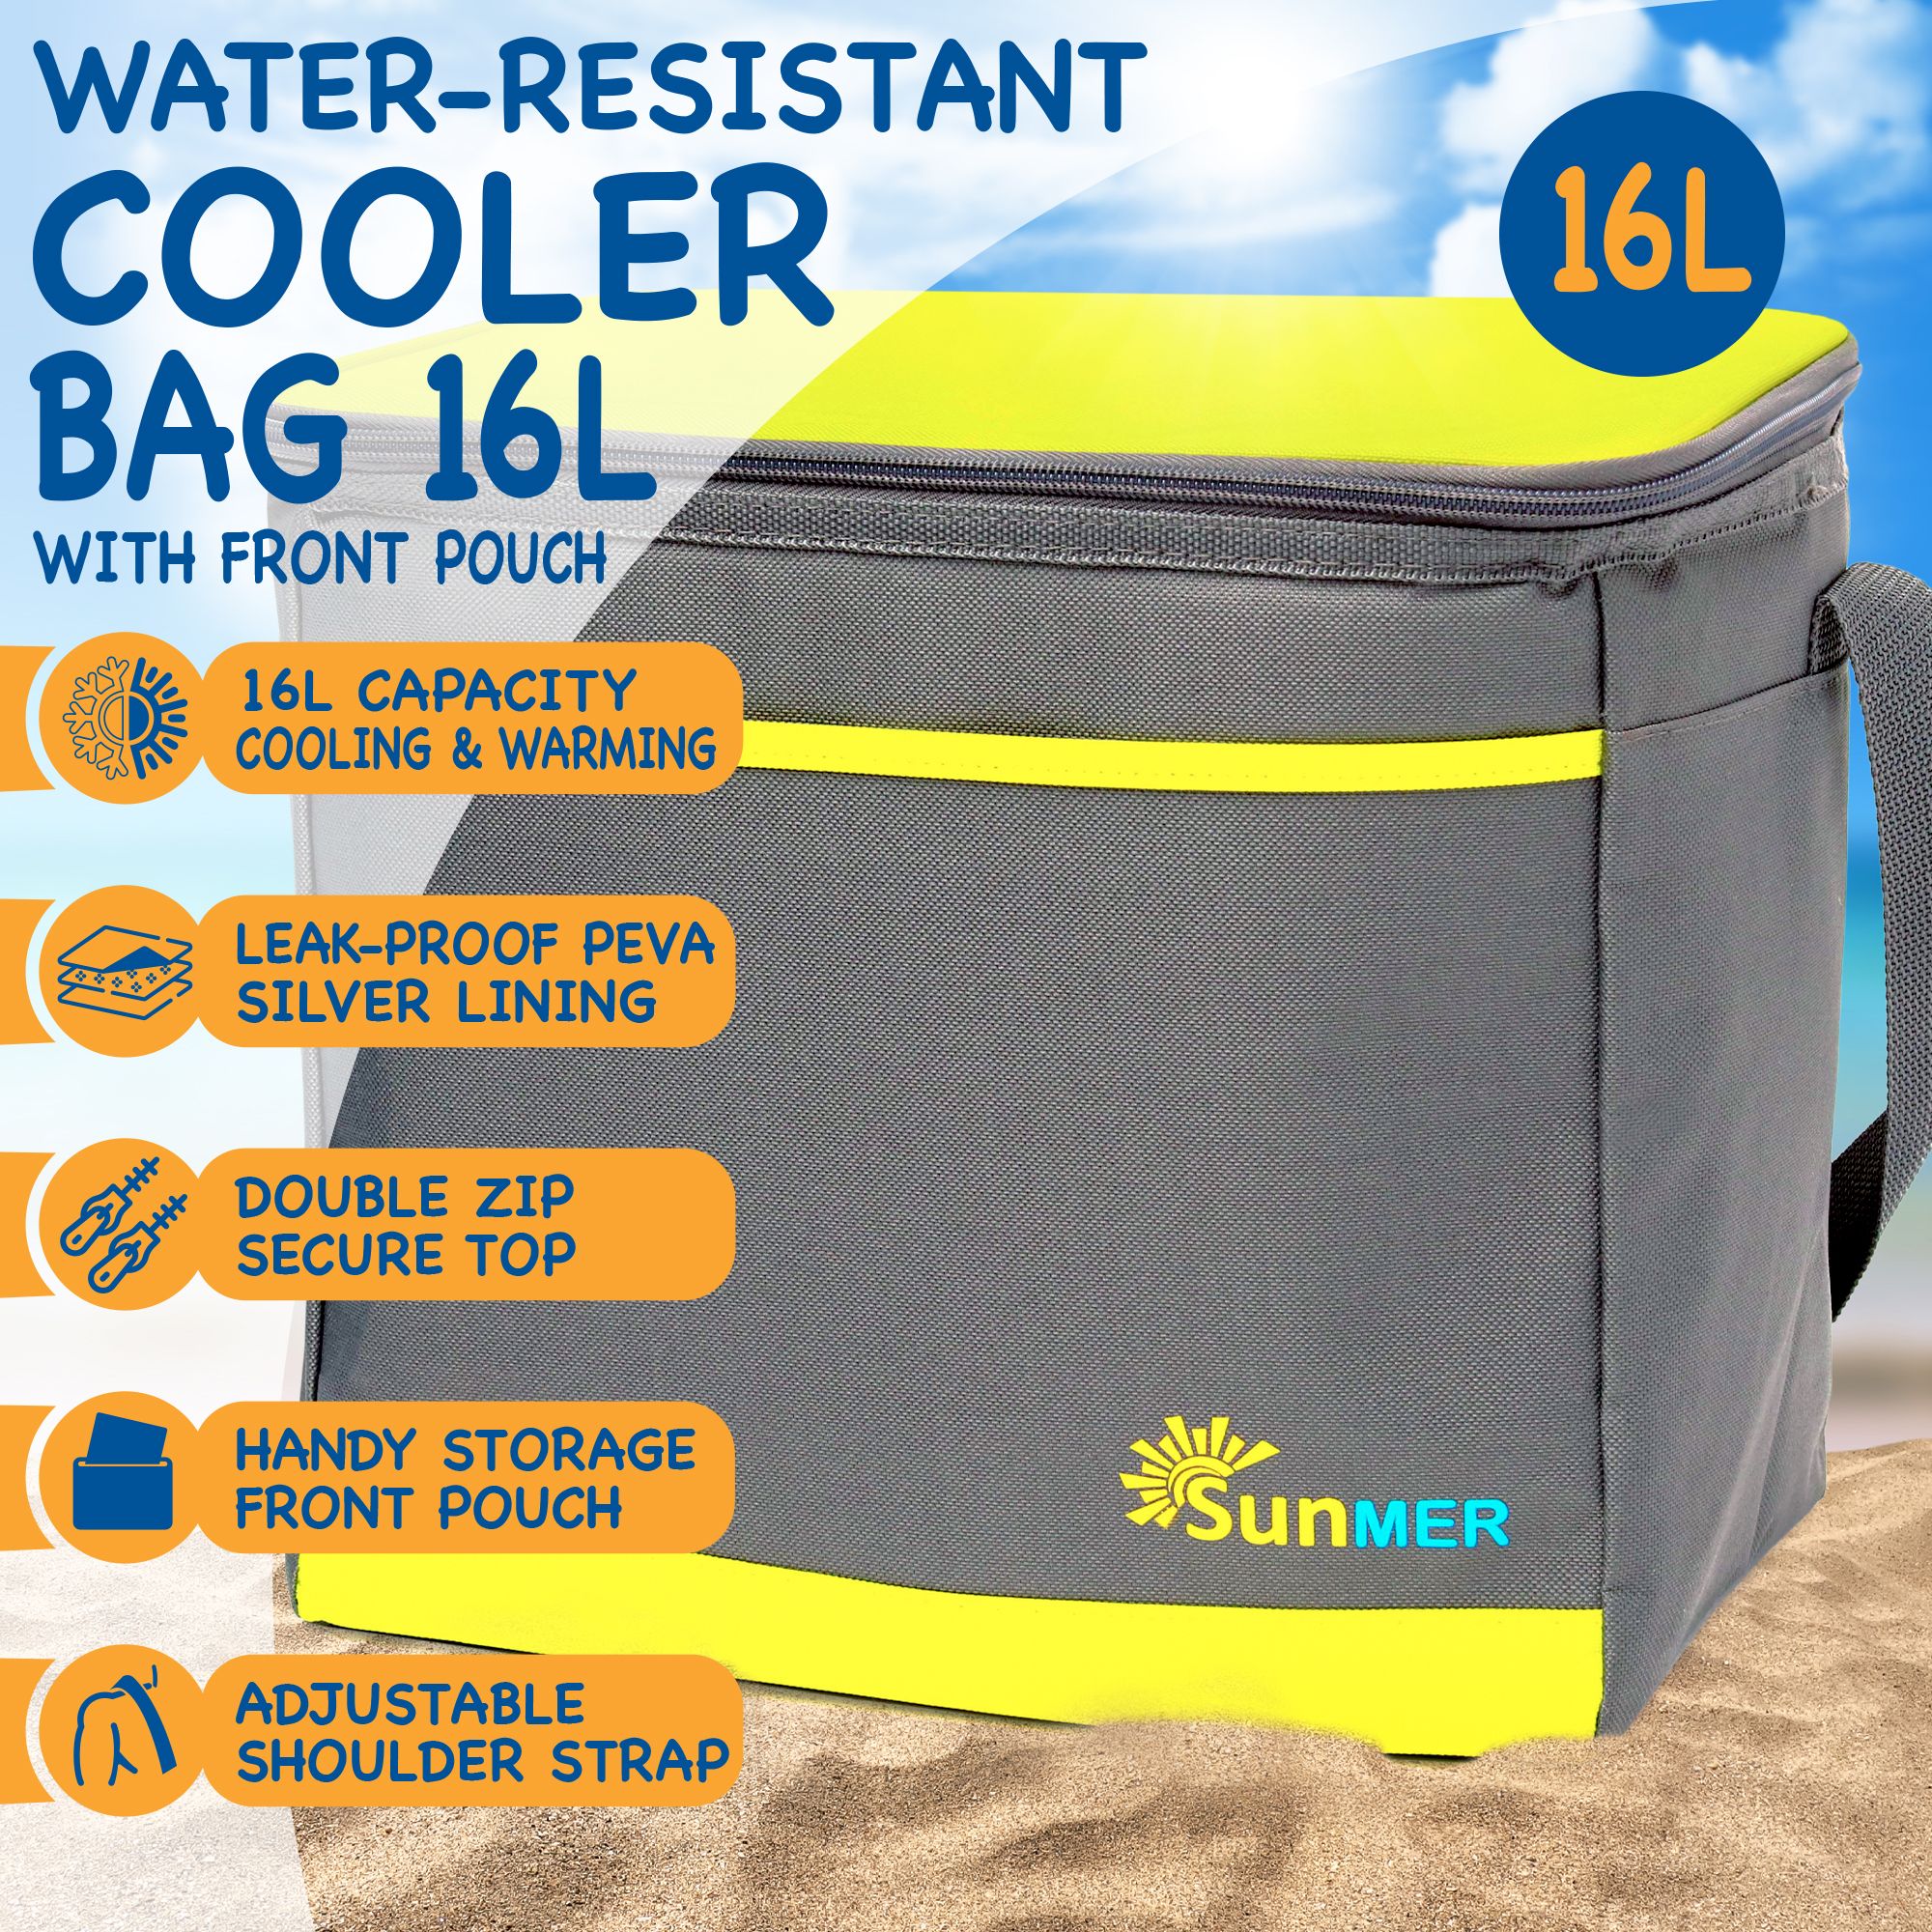 SUNMER 16L Cooler Bag With Shoulder Strap - Grey & Lime